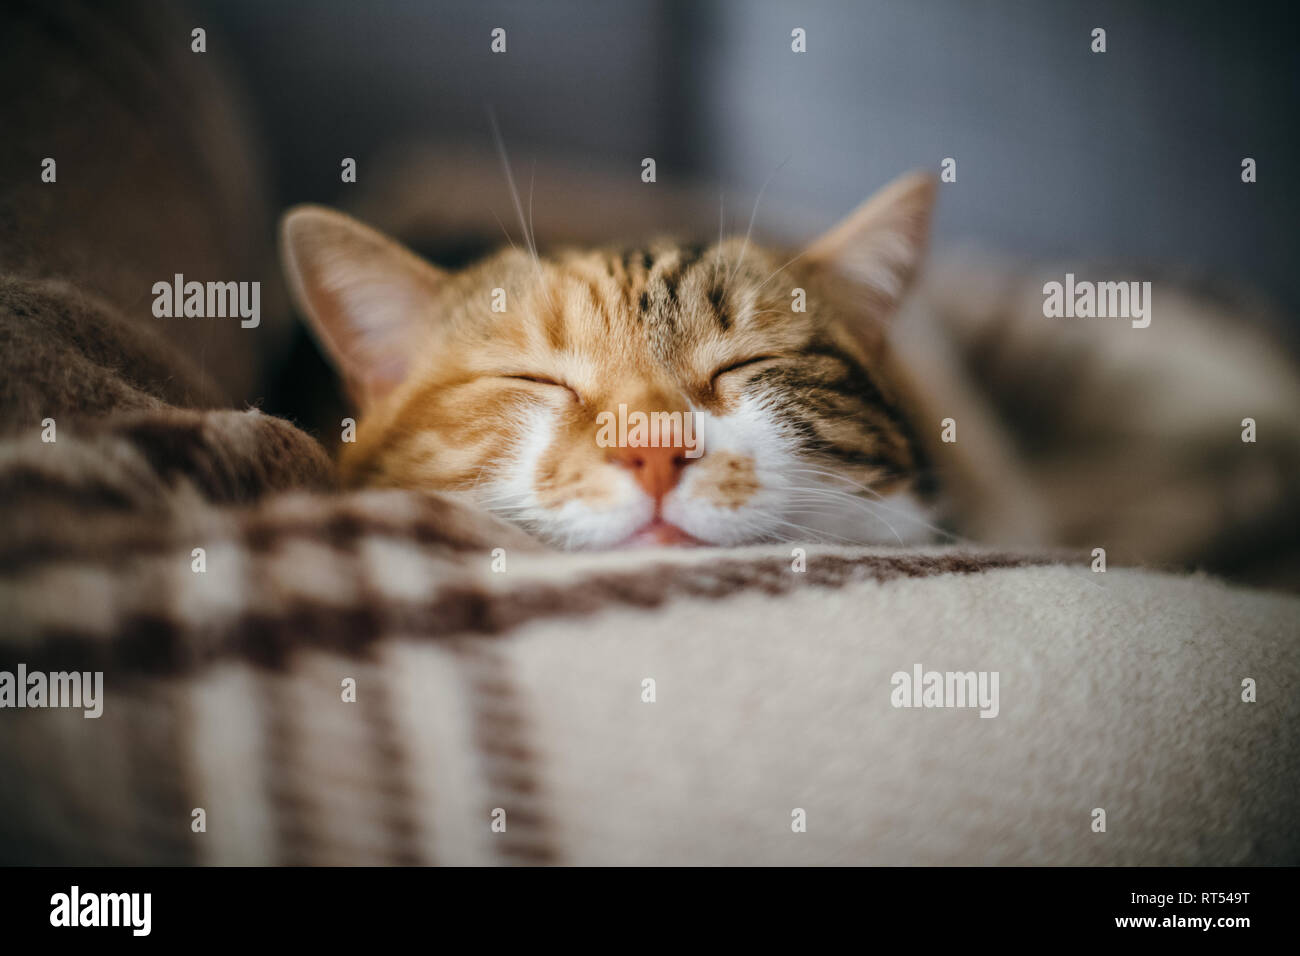 Vue avant du mignon beau chat dormant dans ses rêves sur un quilt à motifs classique britannique Banque D'Images